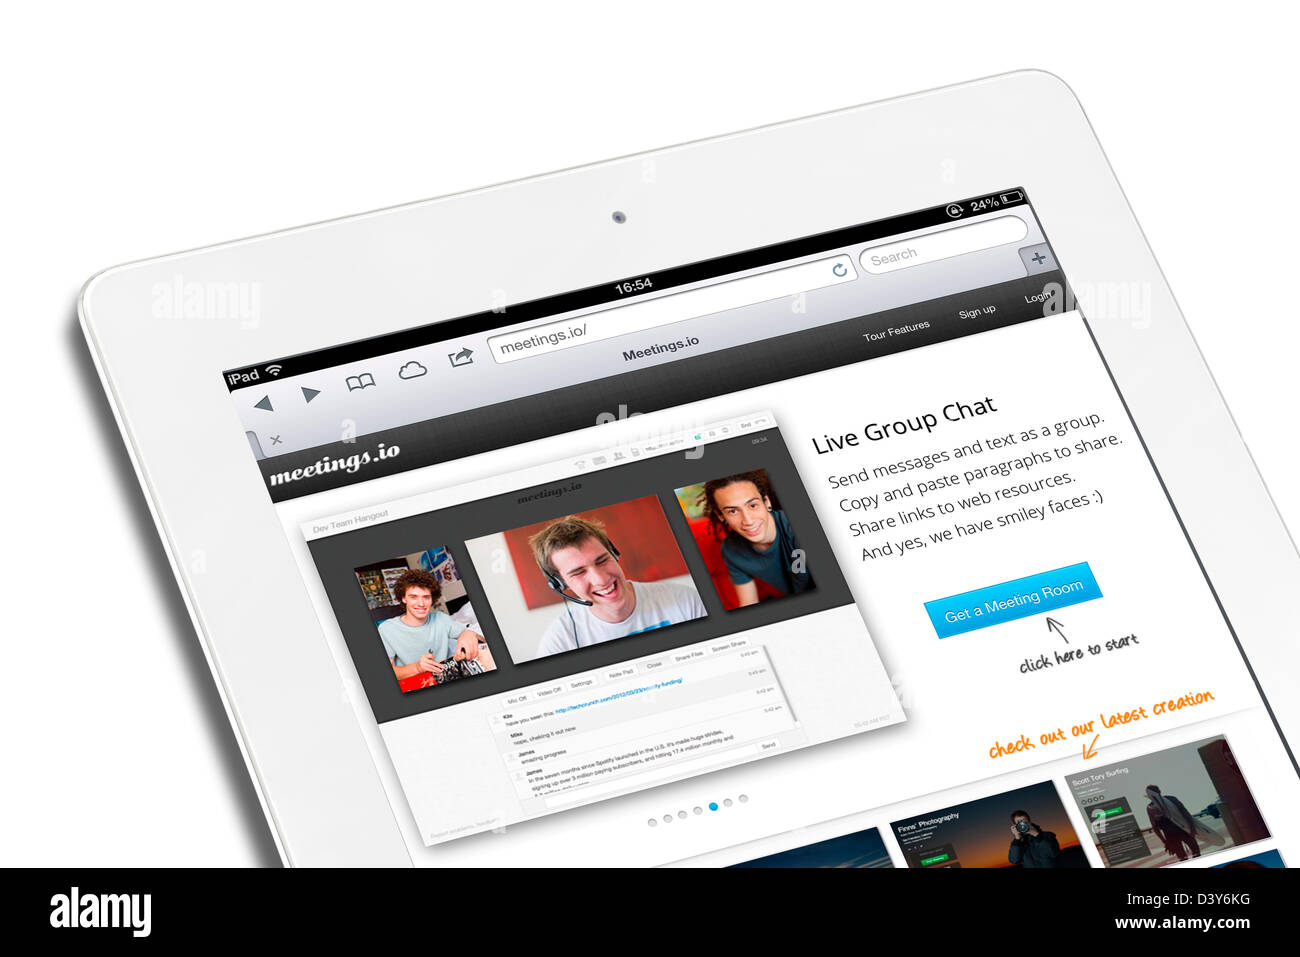 Les réunions.io site sur un iPad 4e génération Banque D'Images